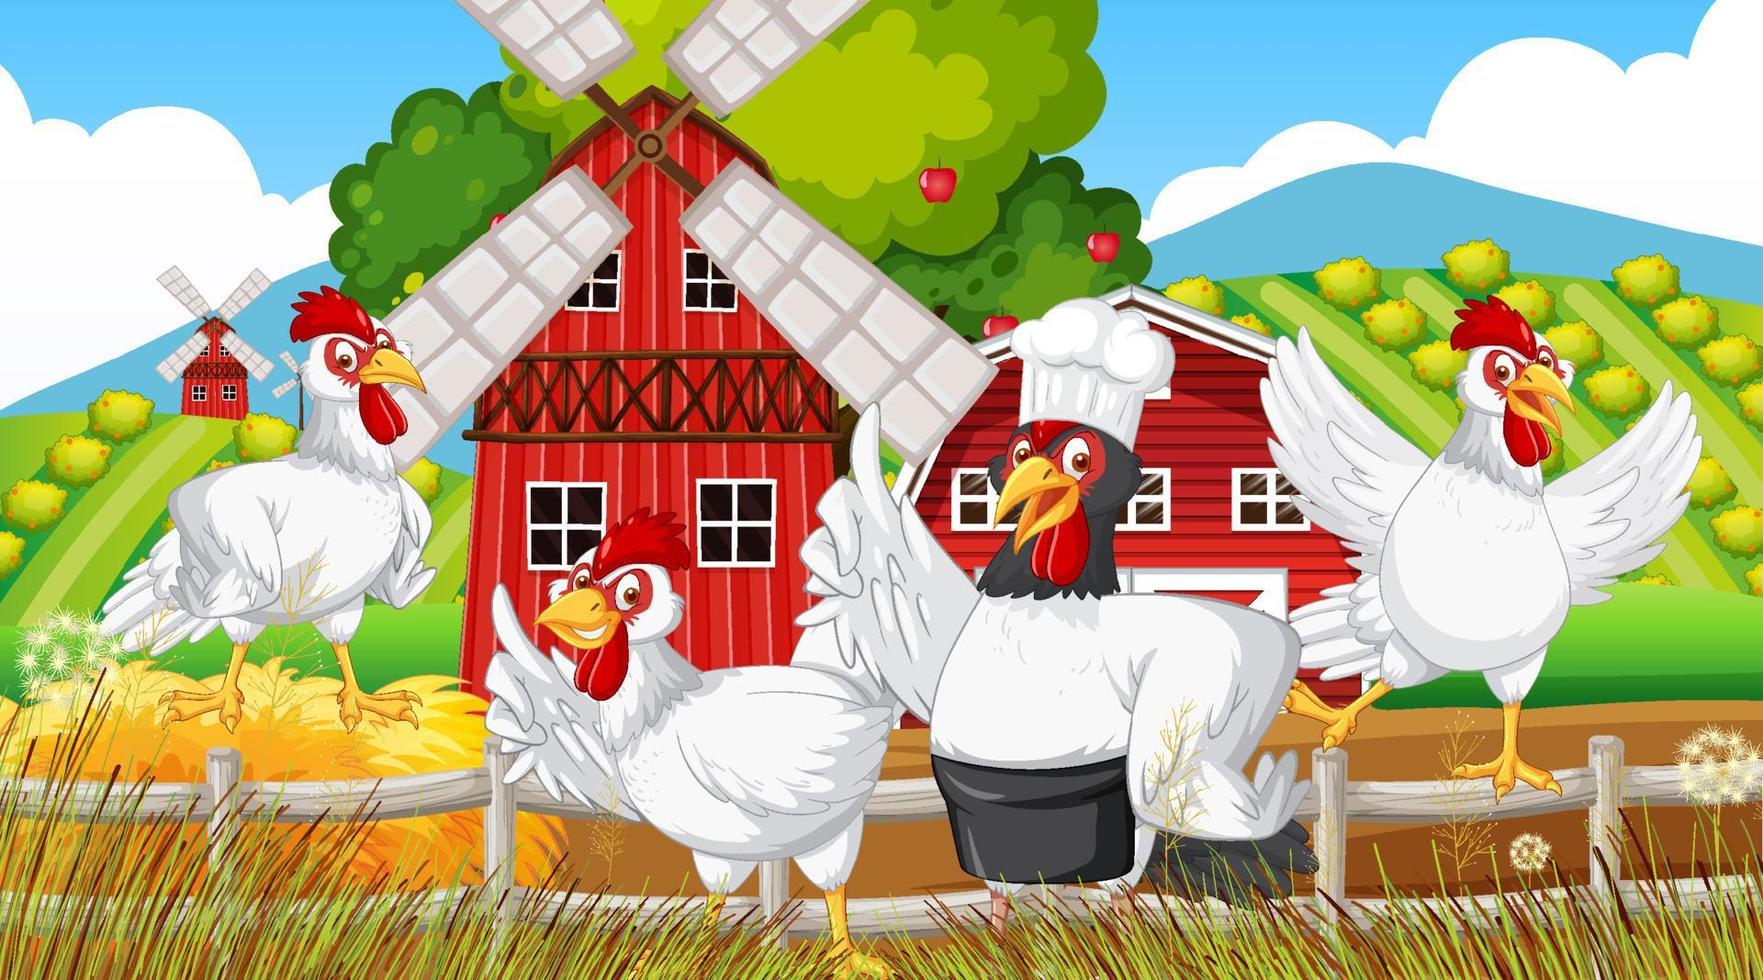 hühnerzeichentrickfiguren in der farmszene vektor